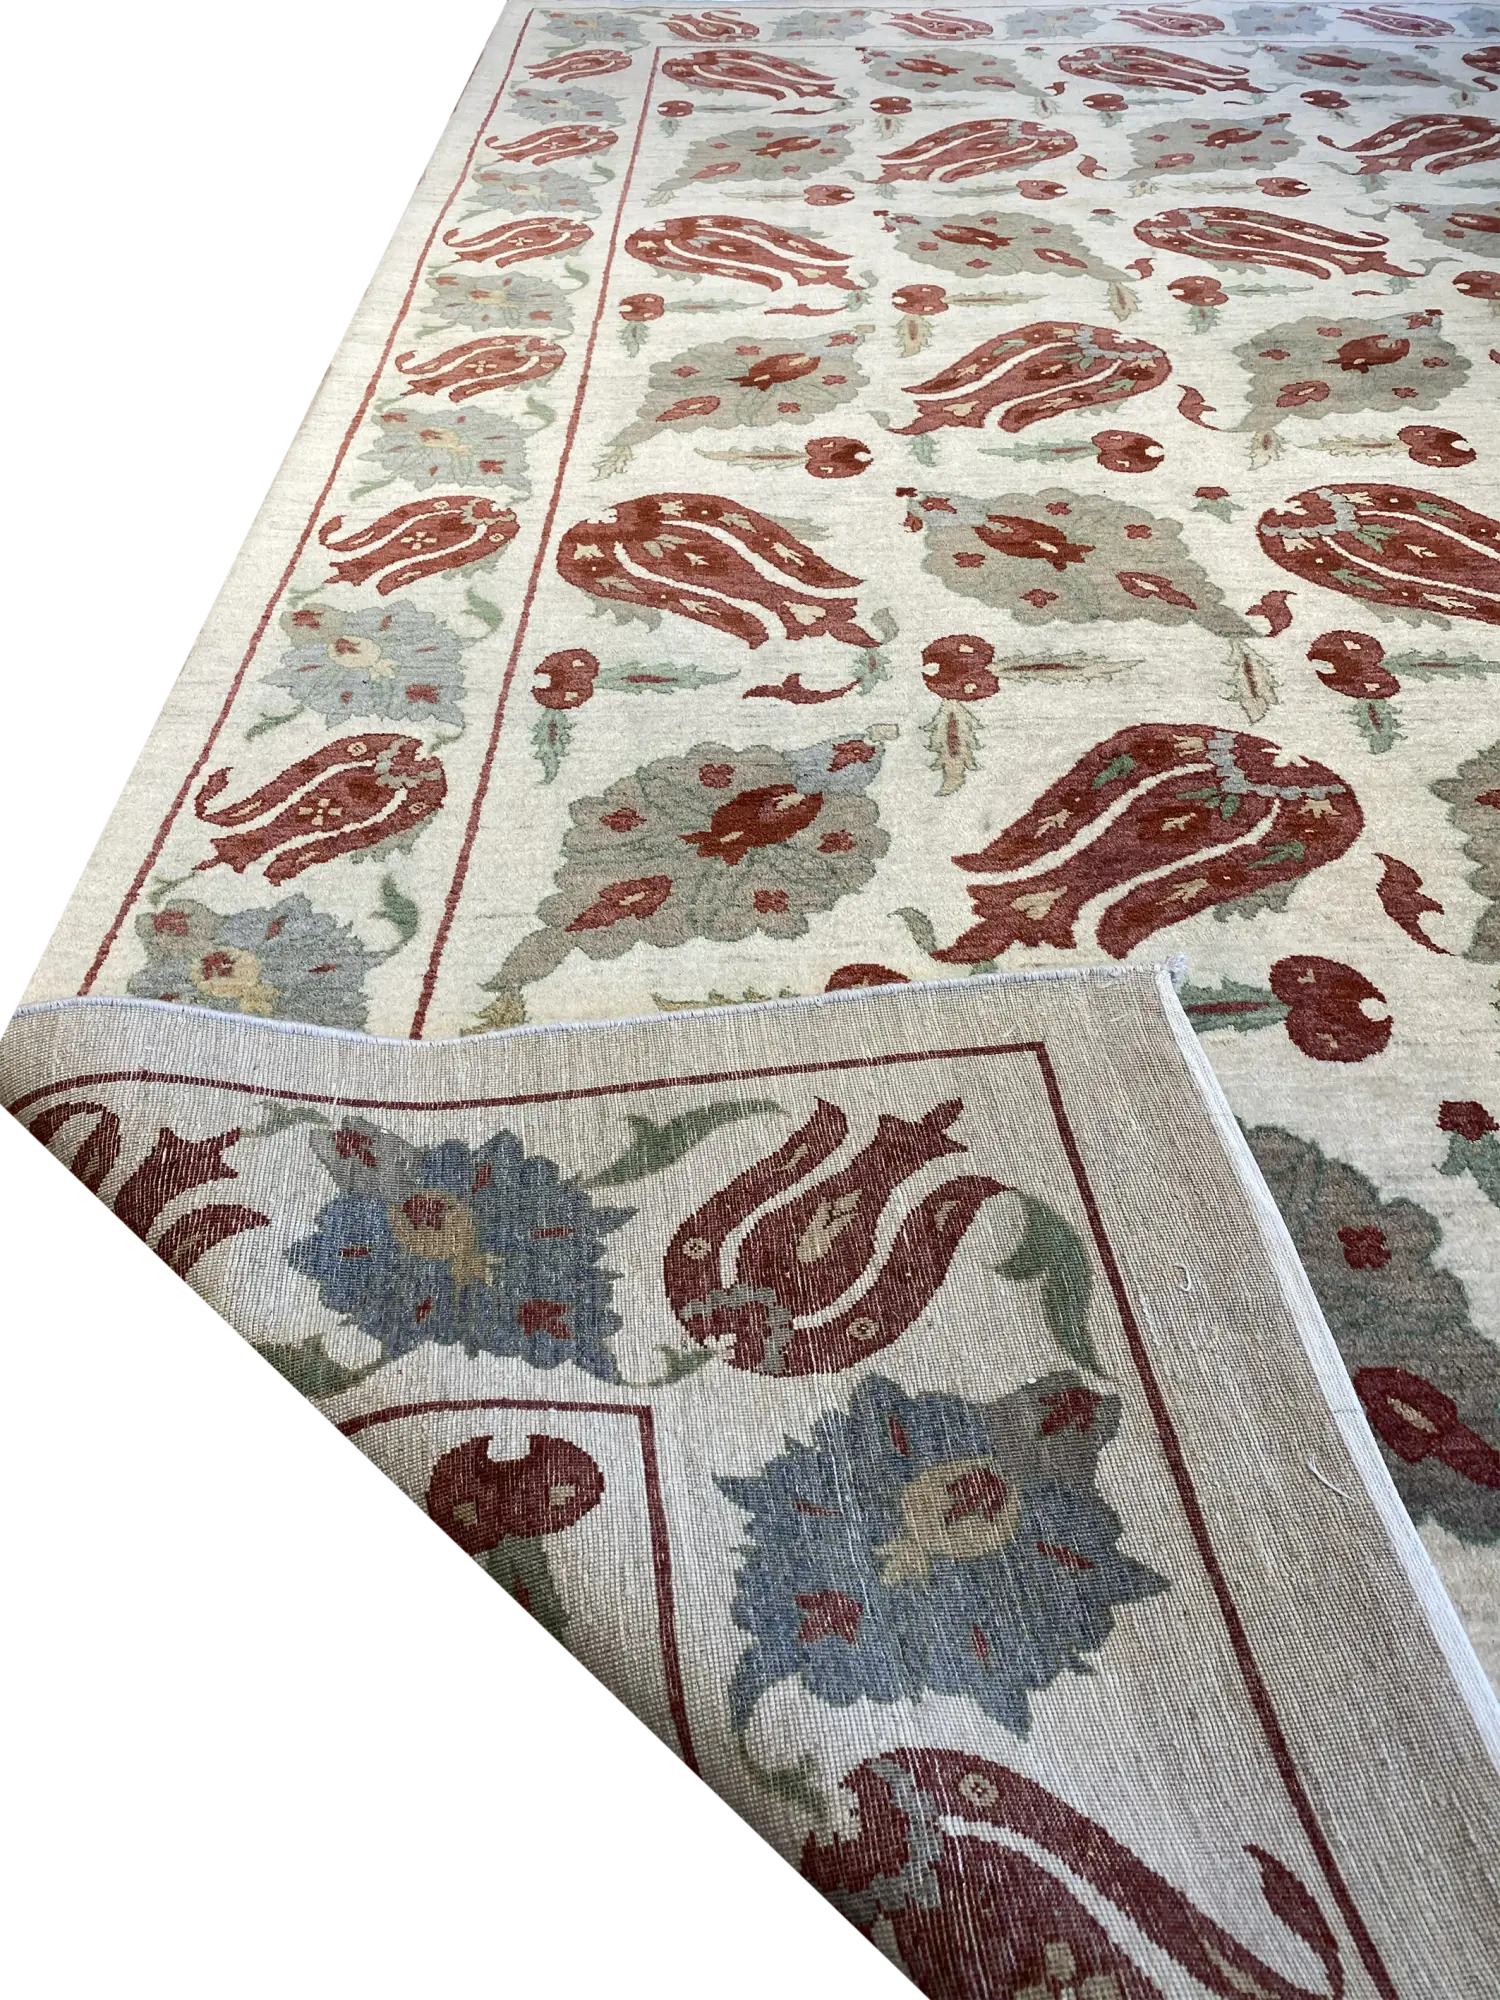 Persian Suzani 8' 8" x 11' 8" Handmade Area Rug - Shabahang Royal Carpet